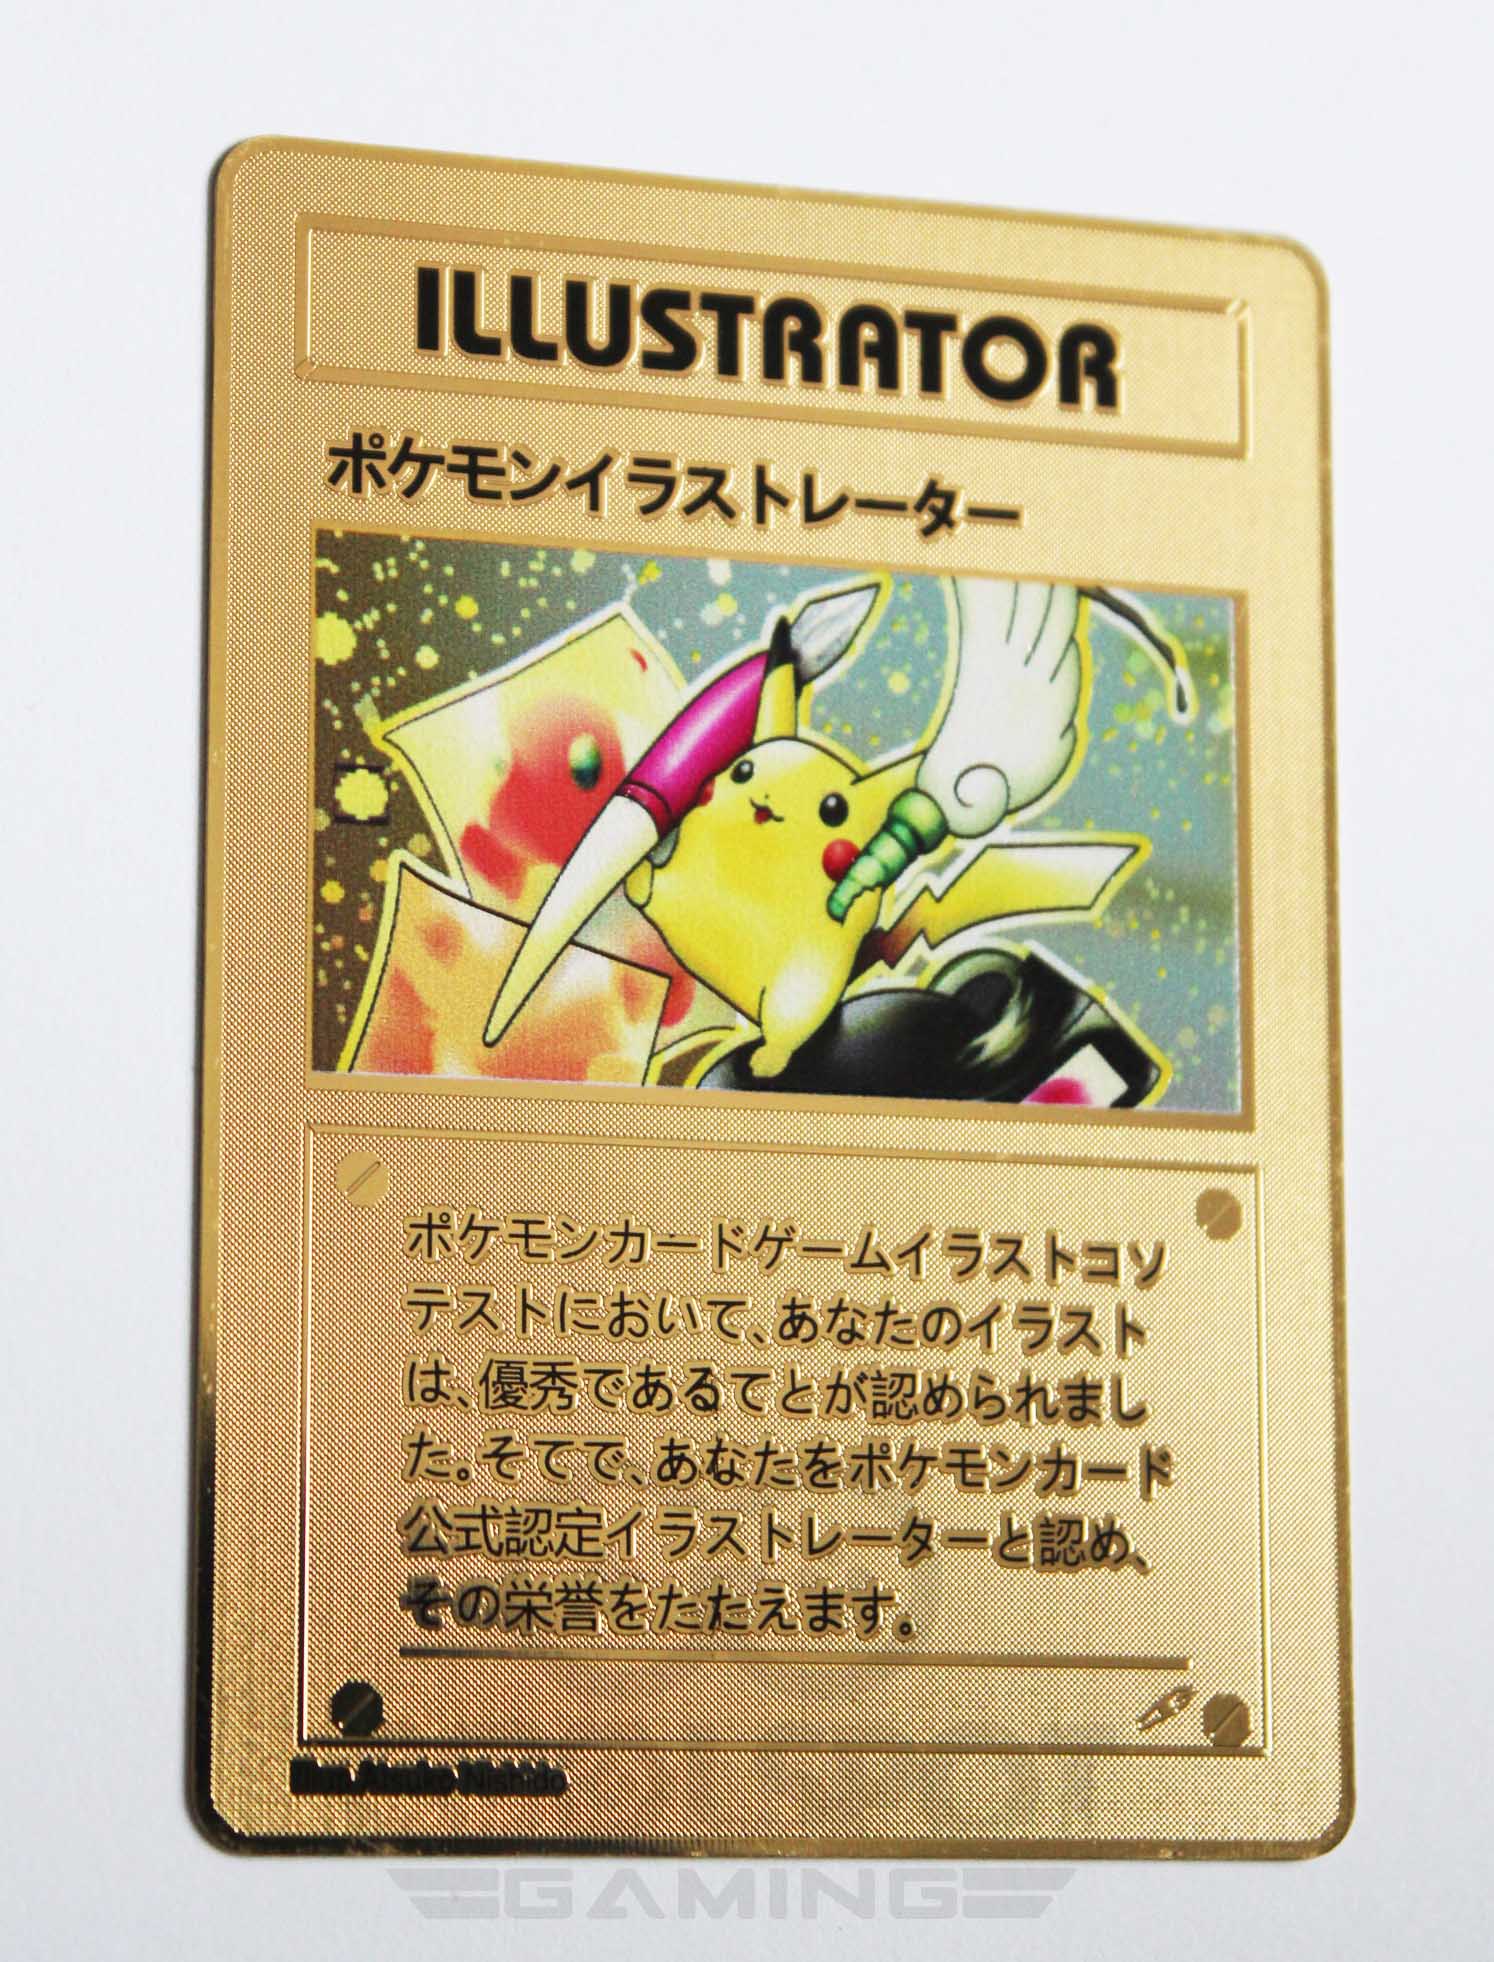 Pikachu Illustrator Gold Metal Pokemon Card Cool Spot Gaming